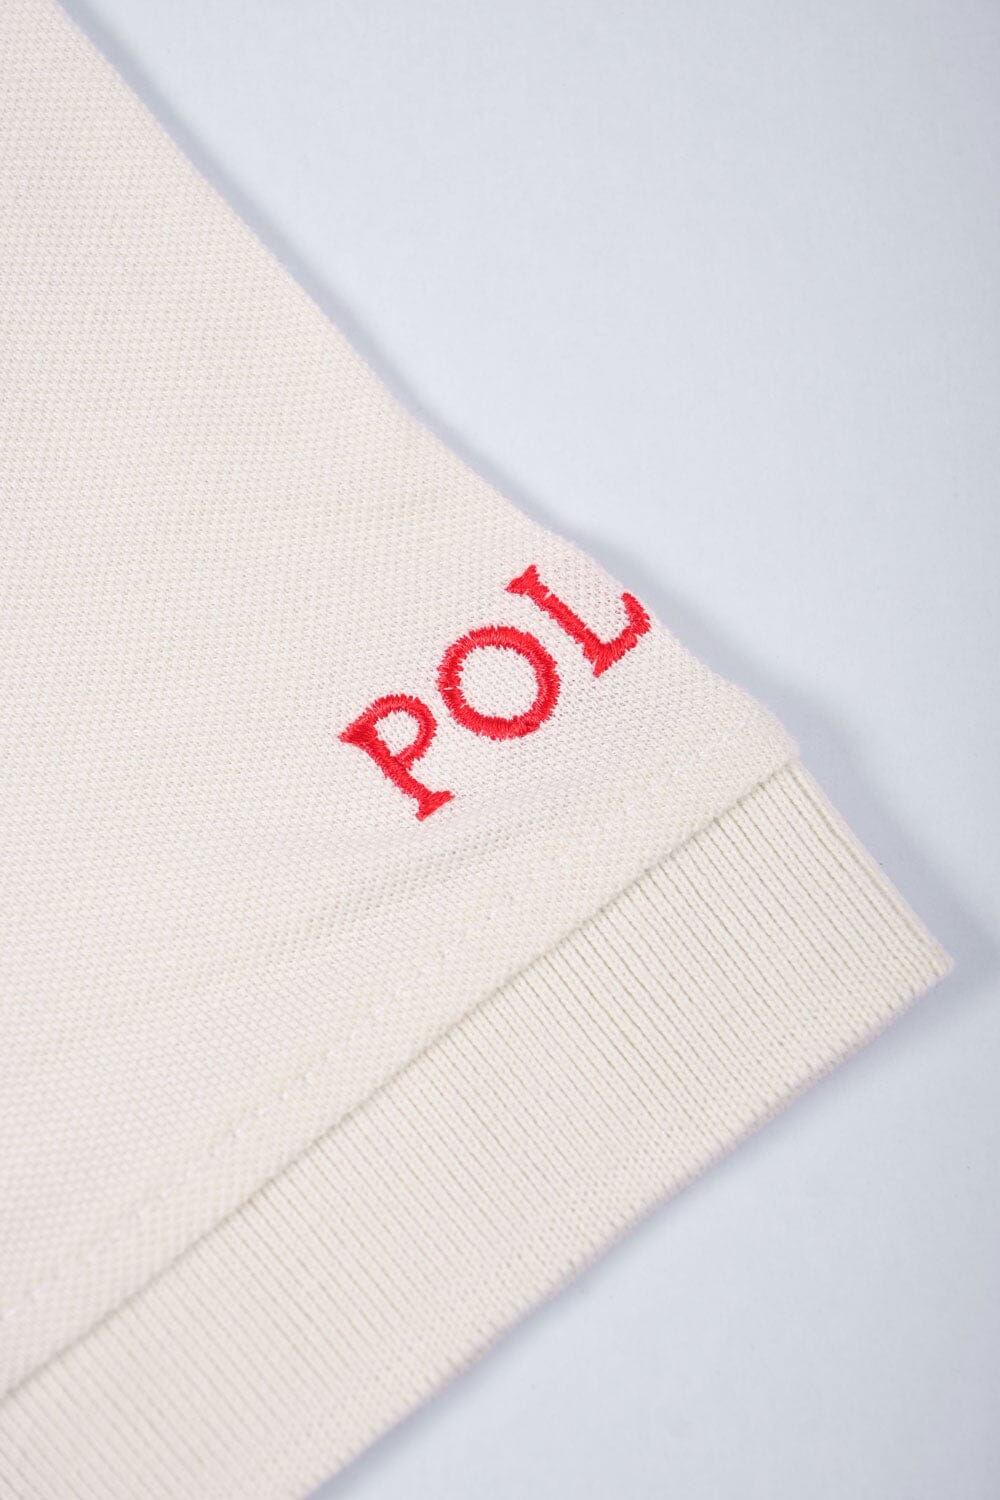 Polo Republica Men's Twin Pony Crest & 8 Embroidered Polo Shirt Men's Polo Shirt Polo Republica 